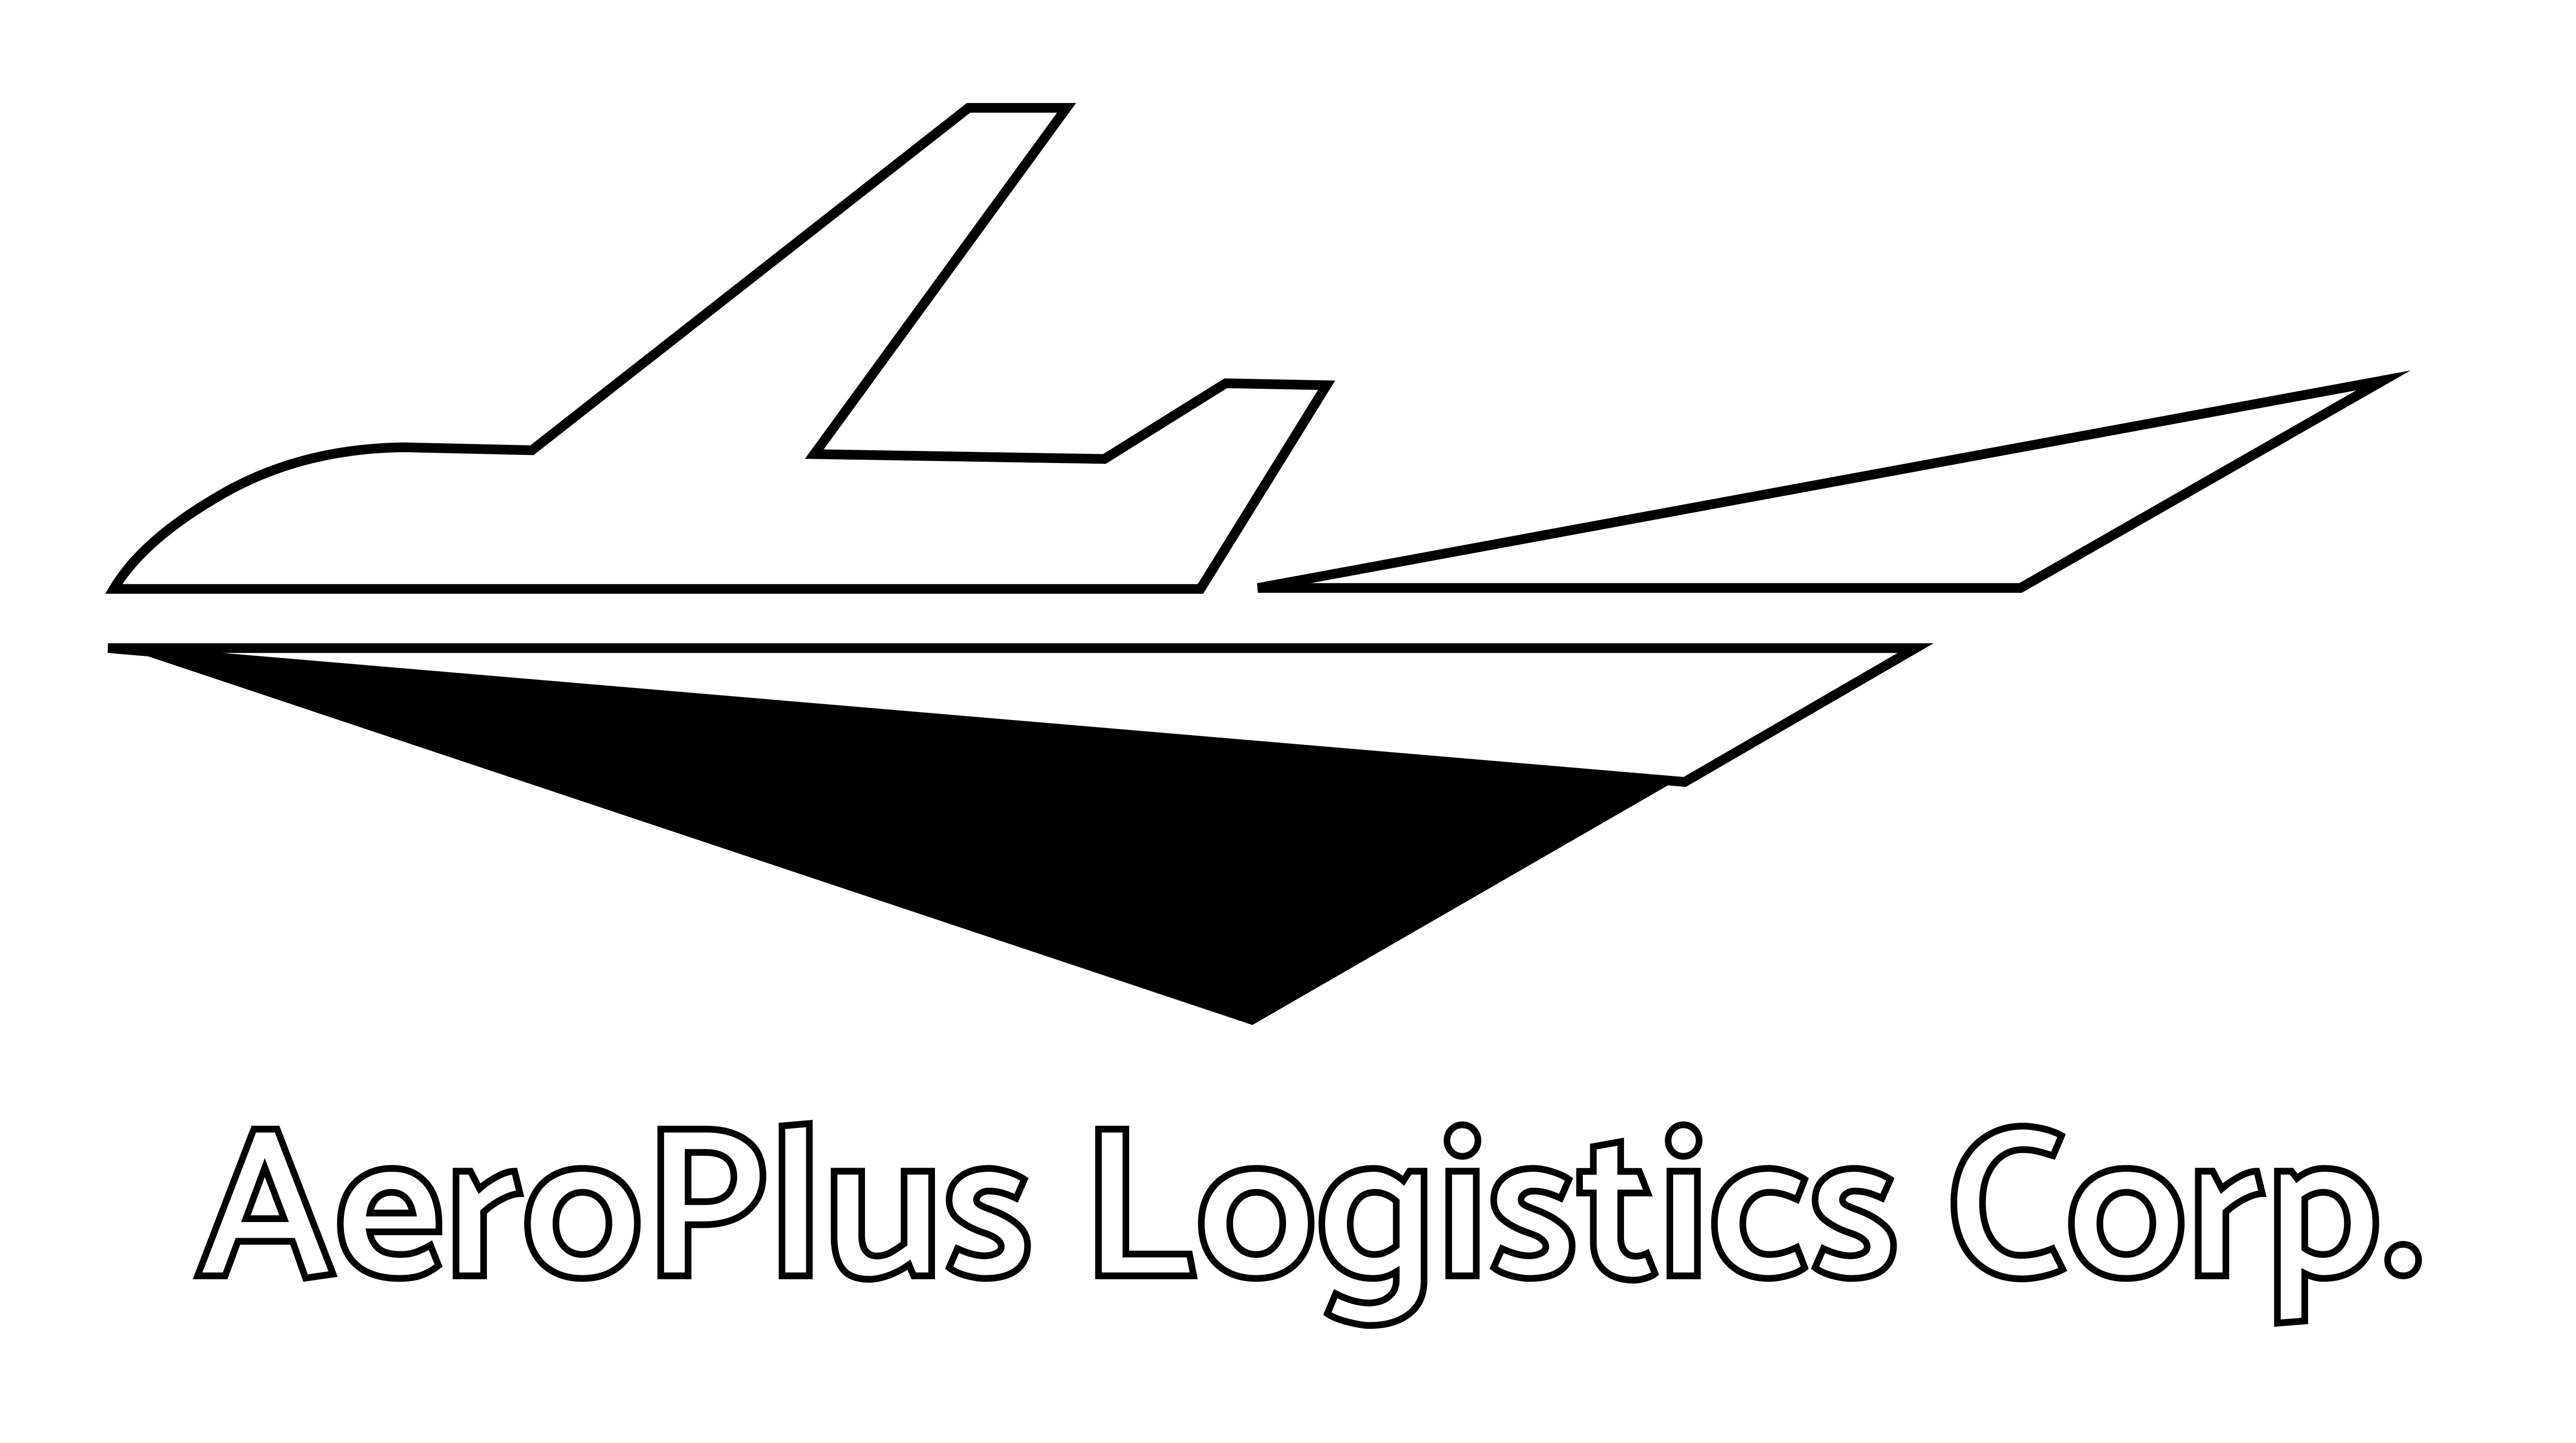 Logistic